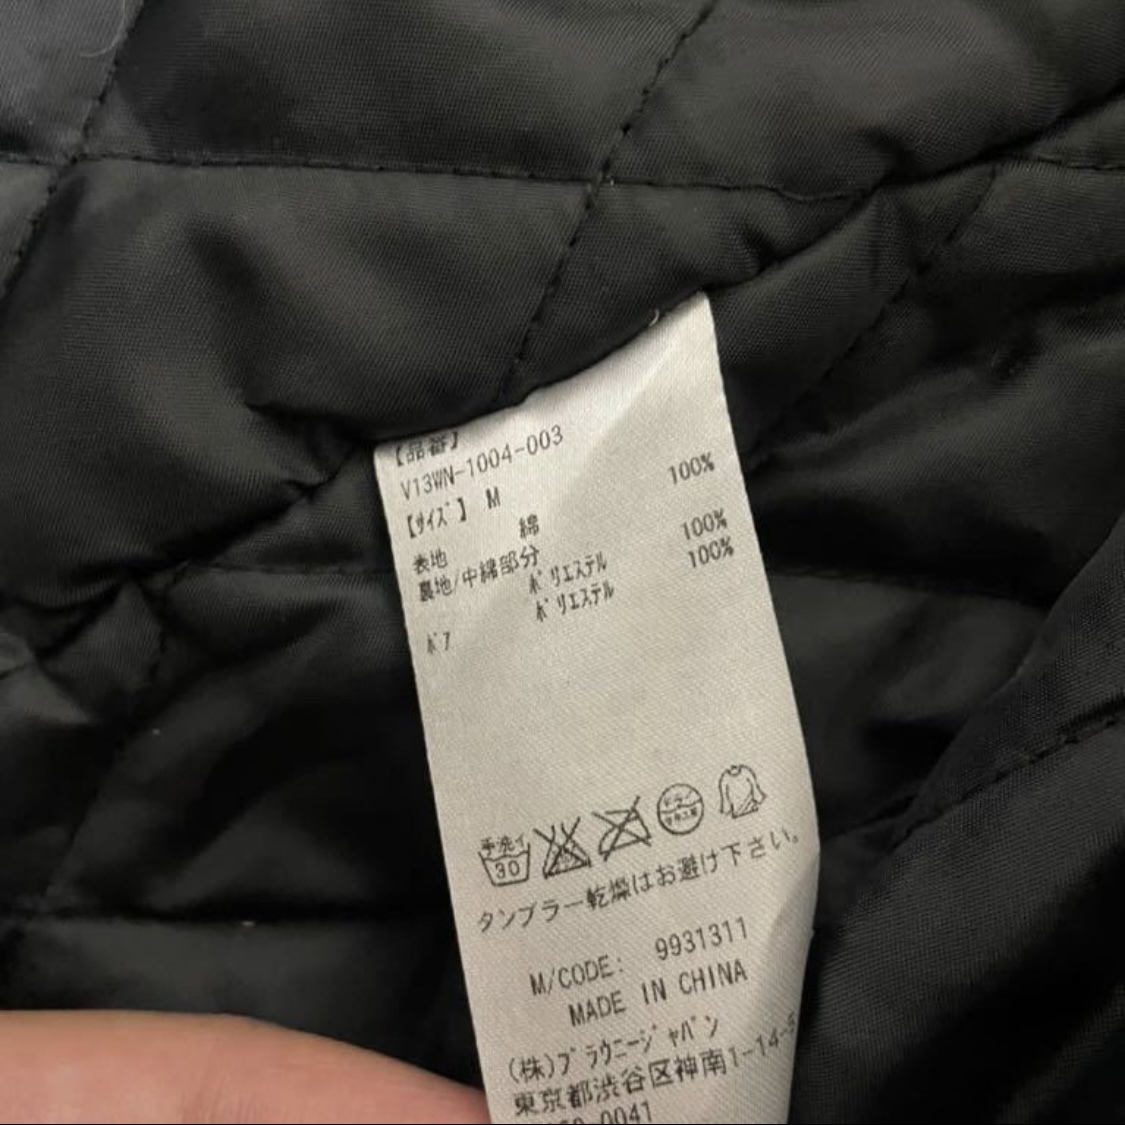  новый товар WIGO BROWNY VINTAGEwigo- Mod's Coat чёрный обычная цена 7990 иен черный ko-te